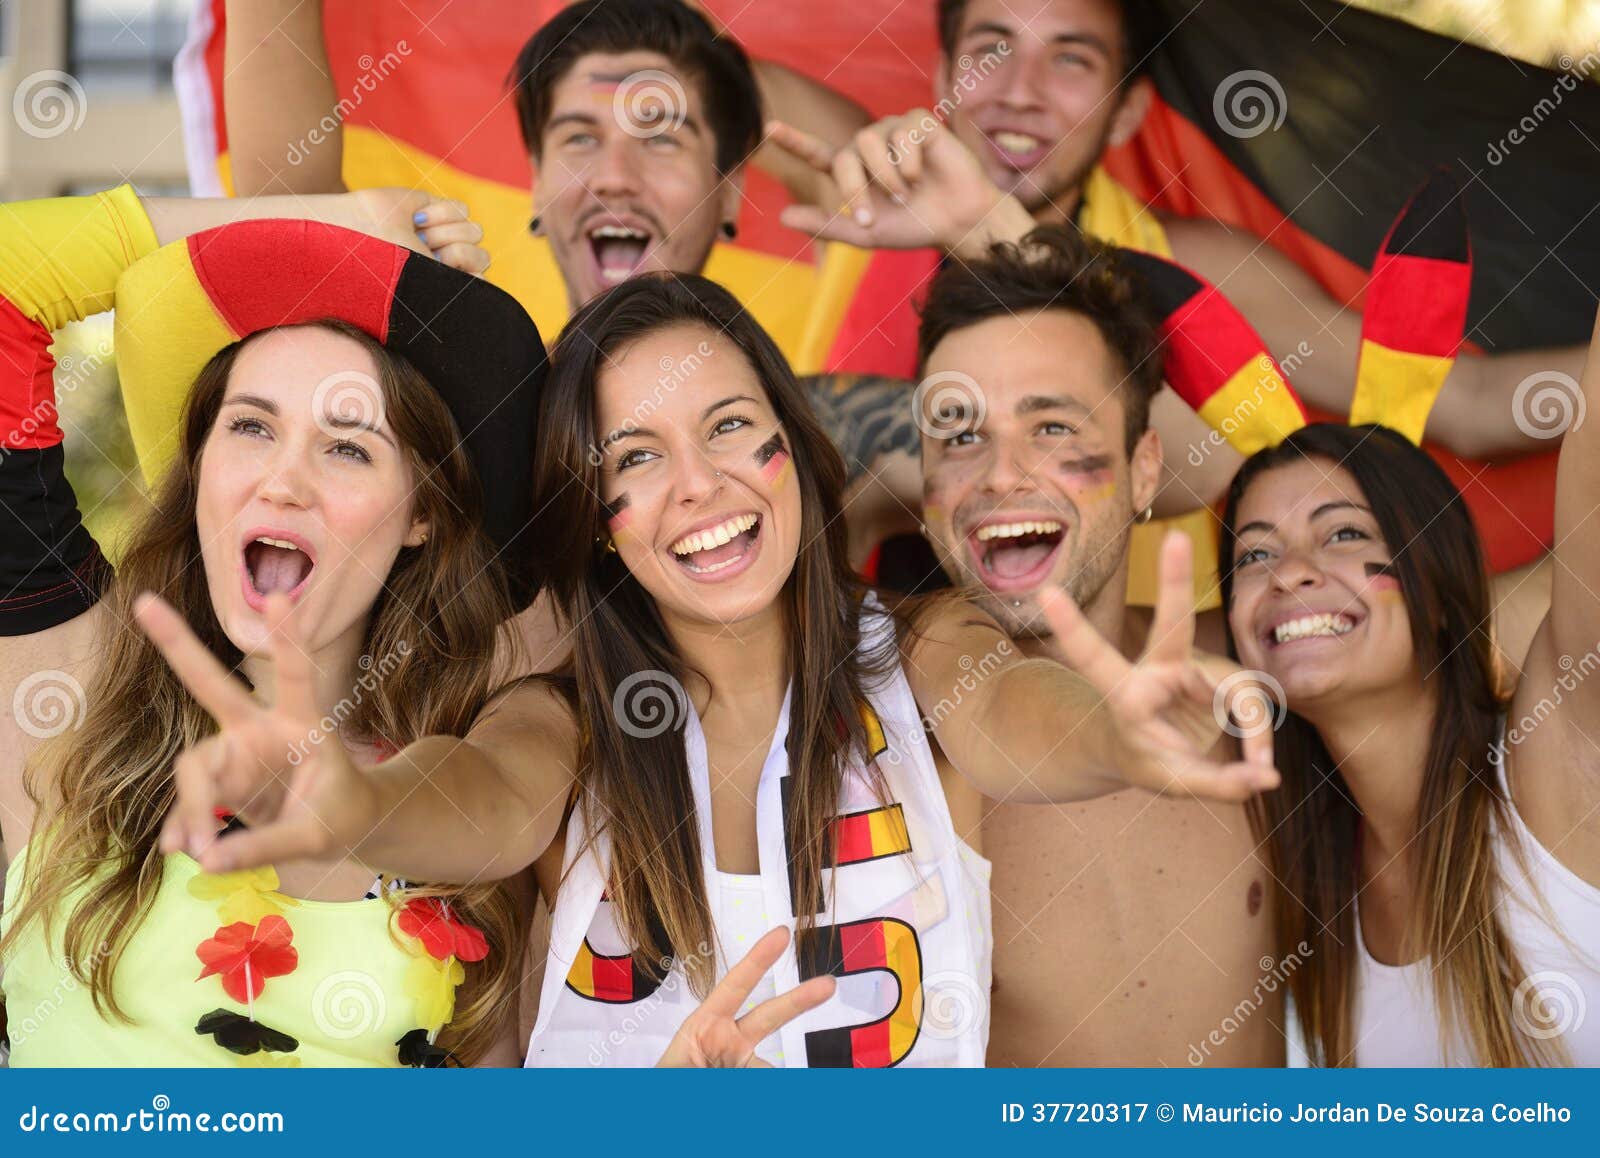 german sport soccer fans celebrating victory.